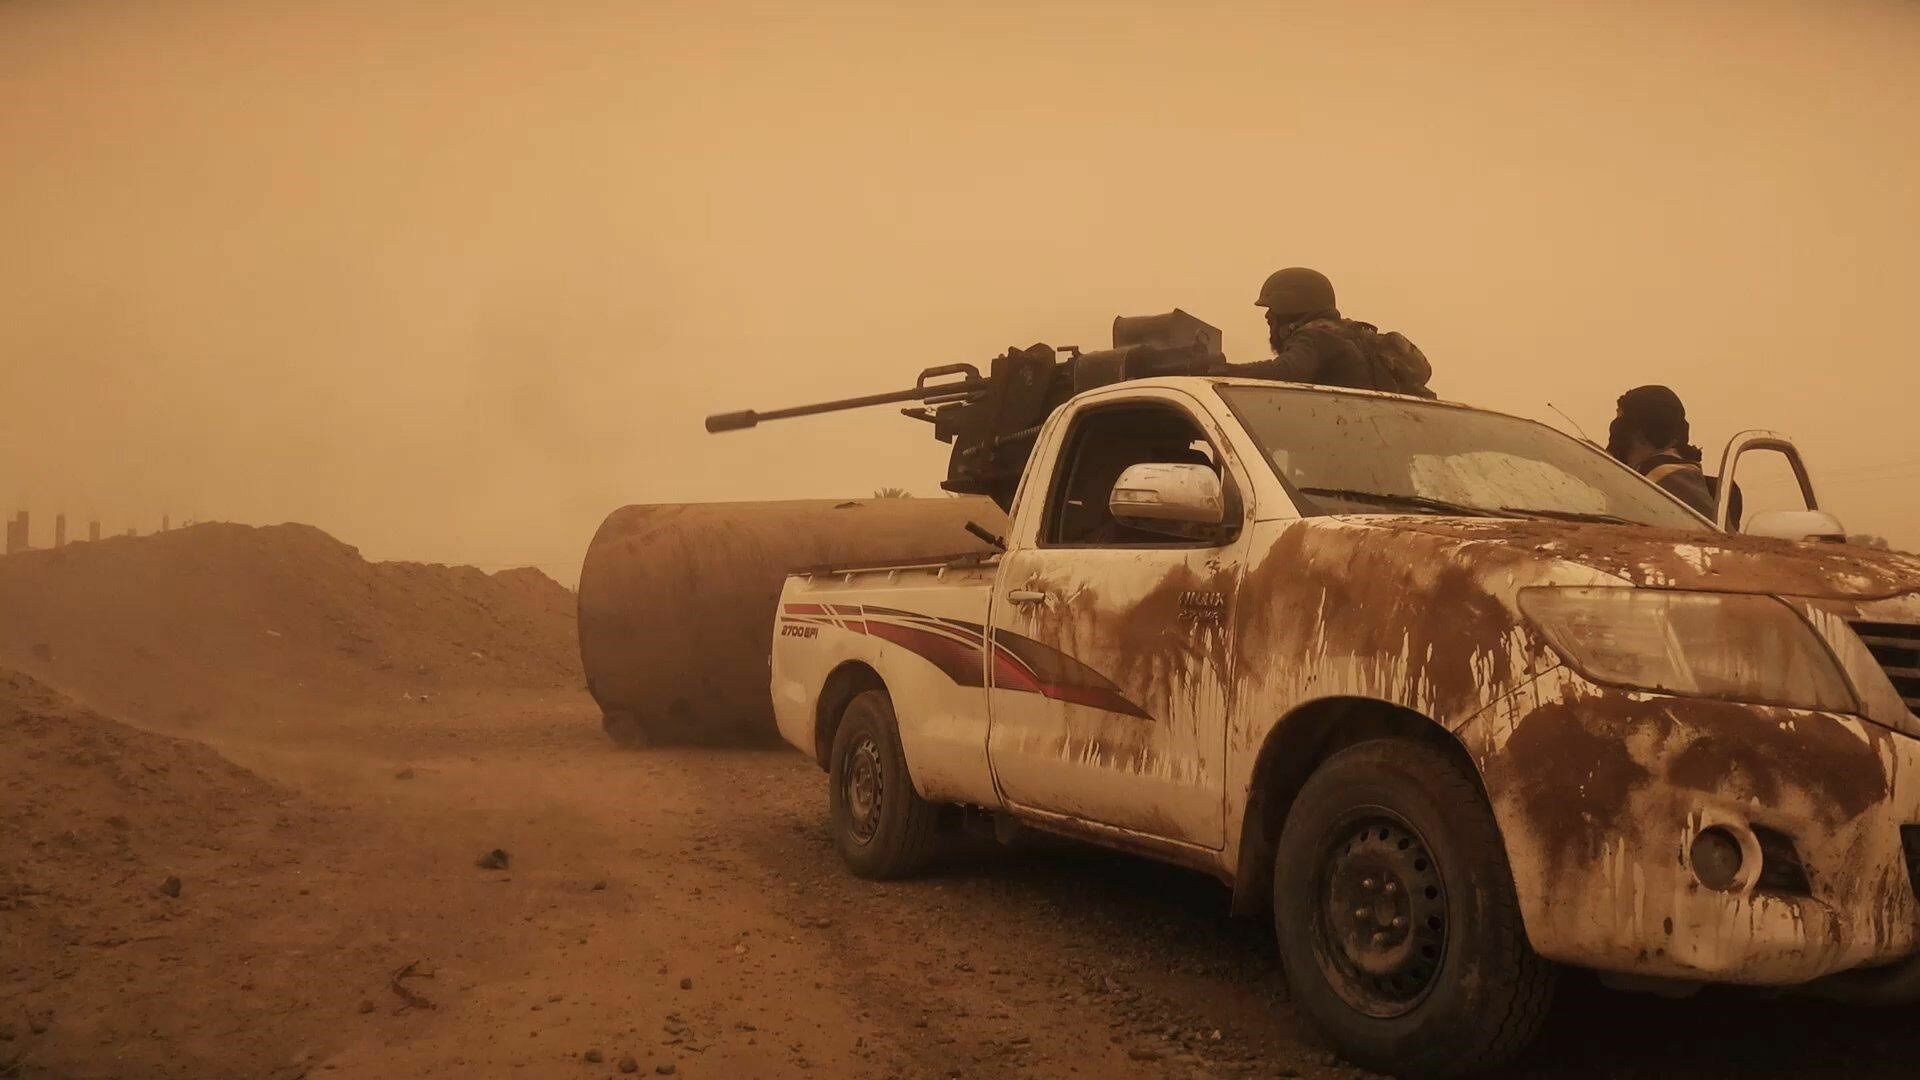 Пикап с пулеметом в сирийской пустыне - отнюдь не изобретение исламистов